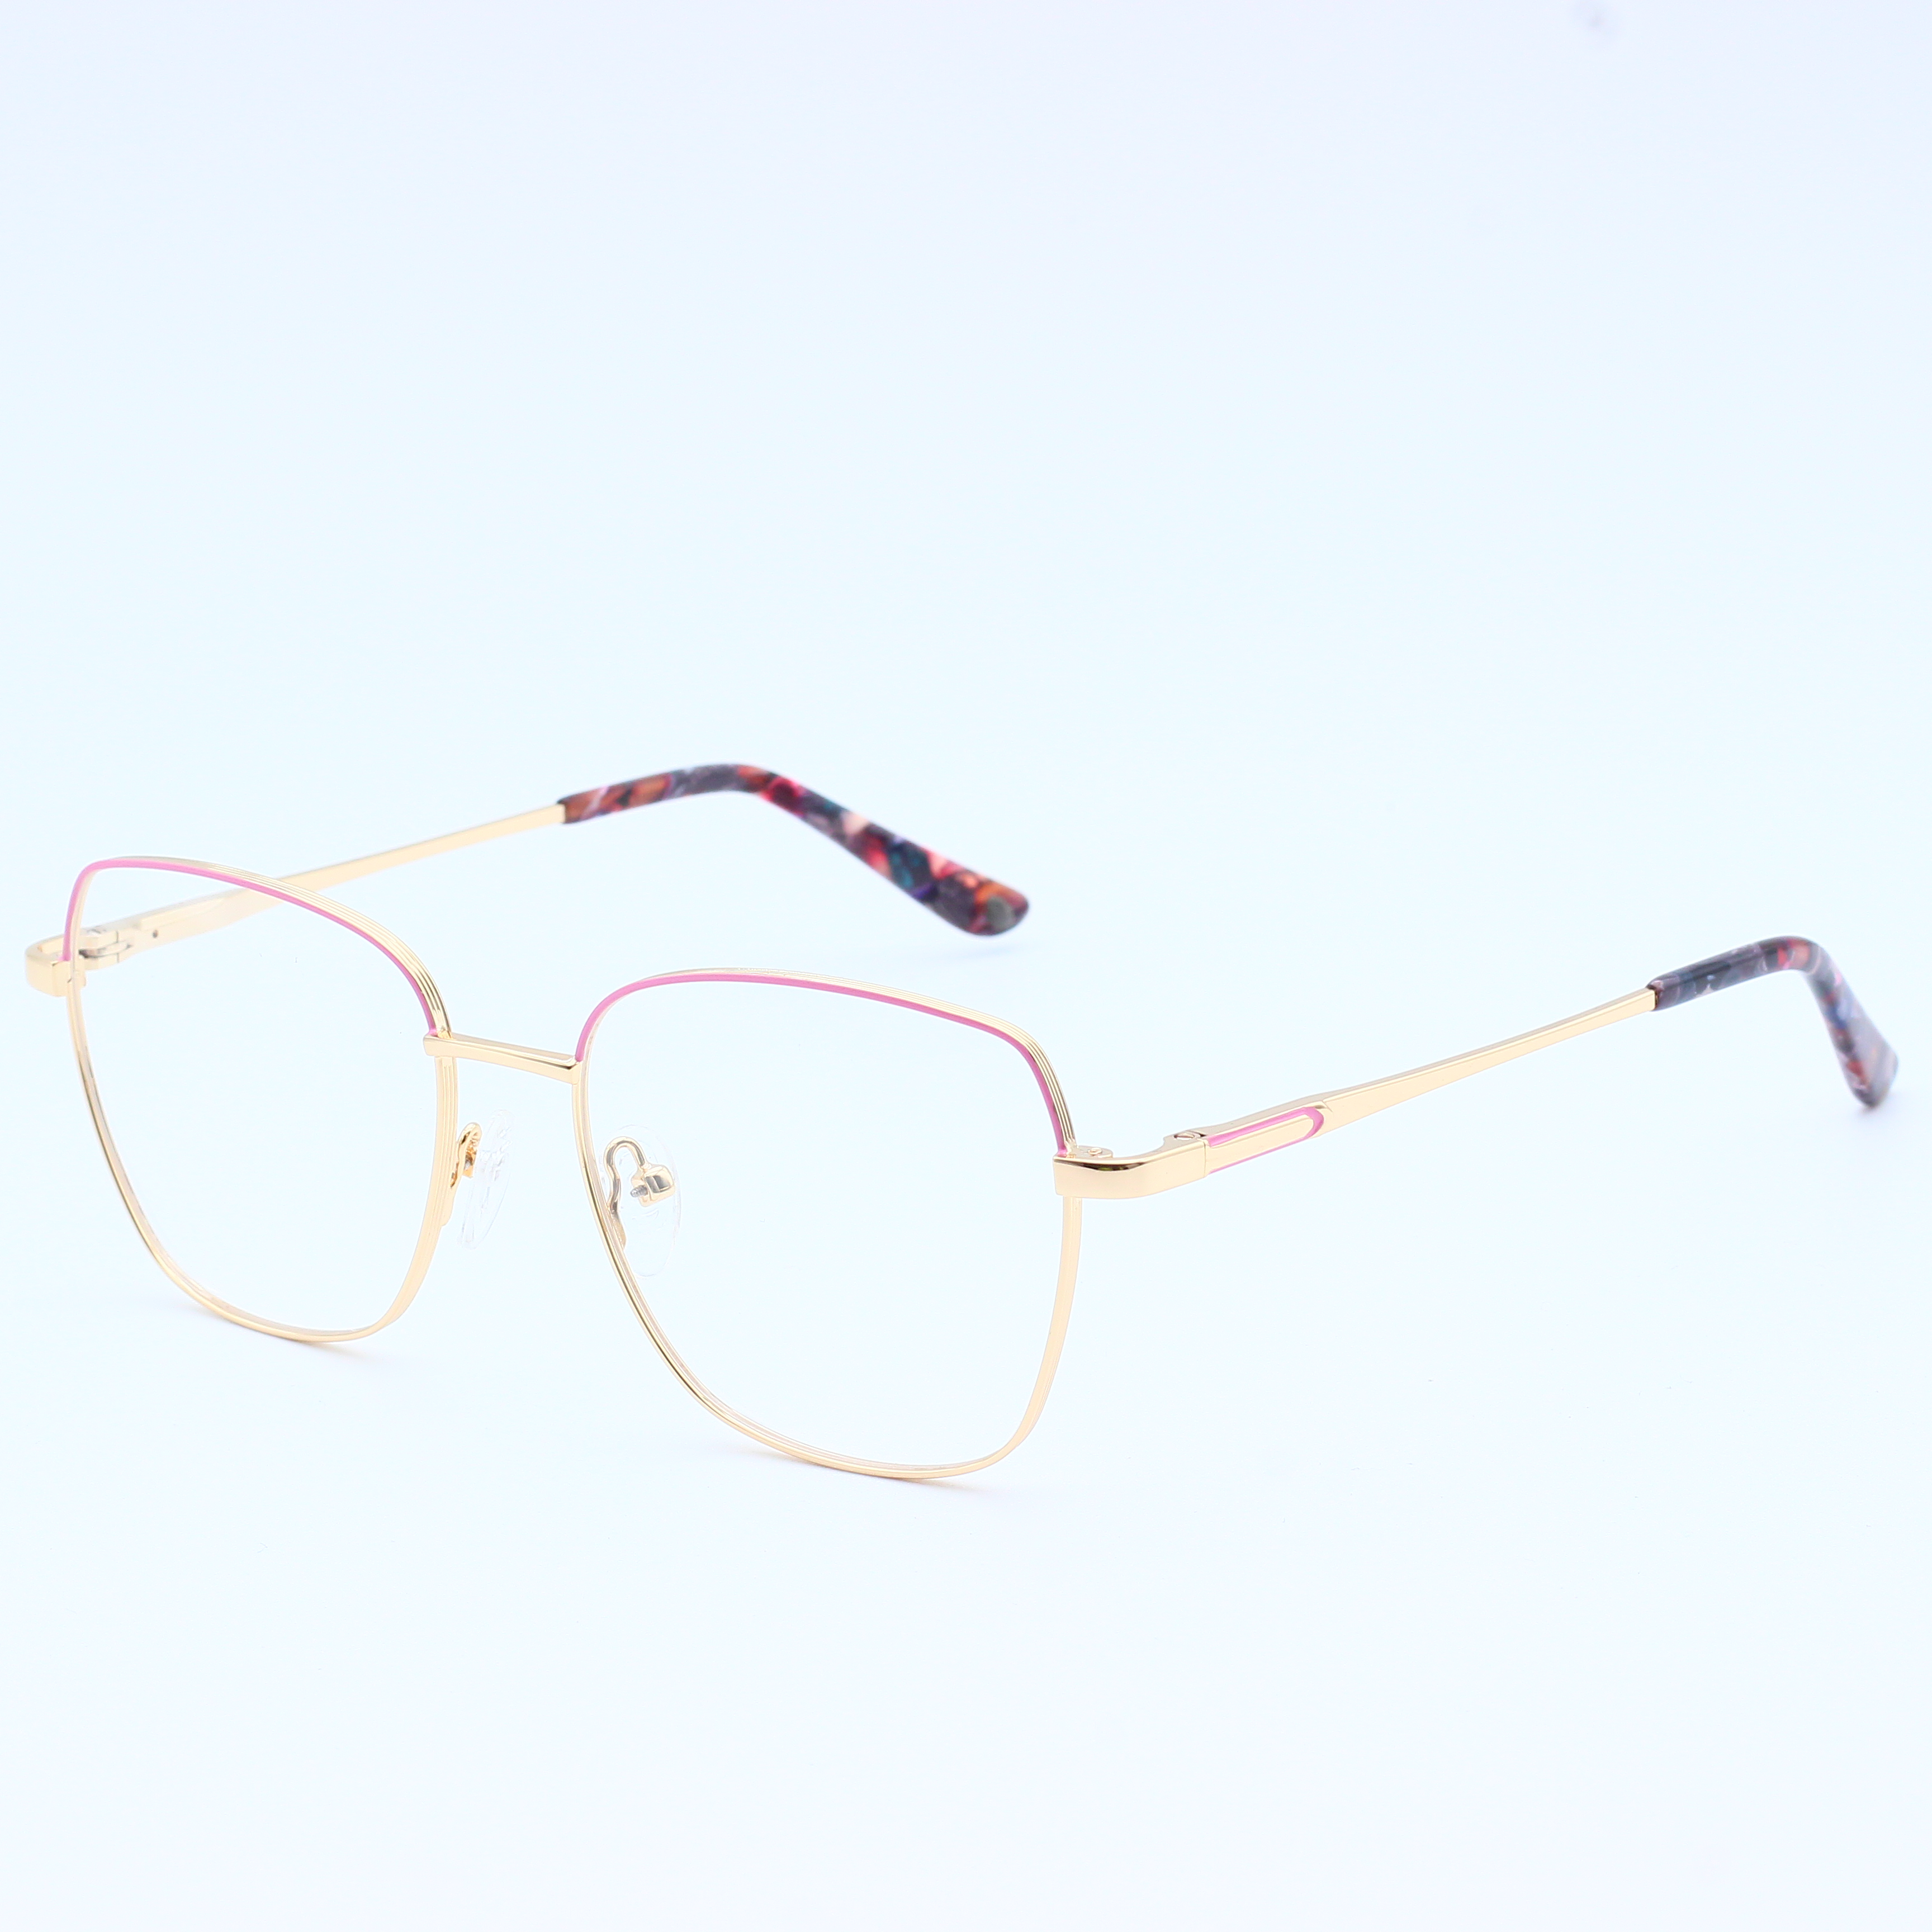 Best selling combine metal eyeglasses frames (9)